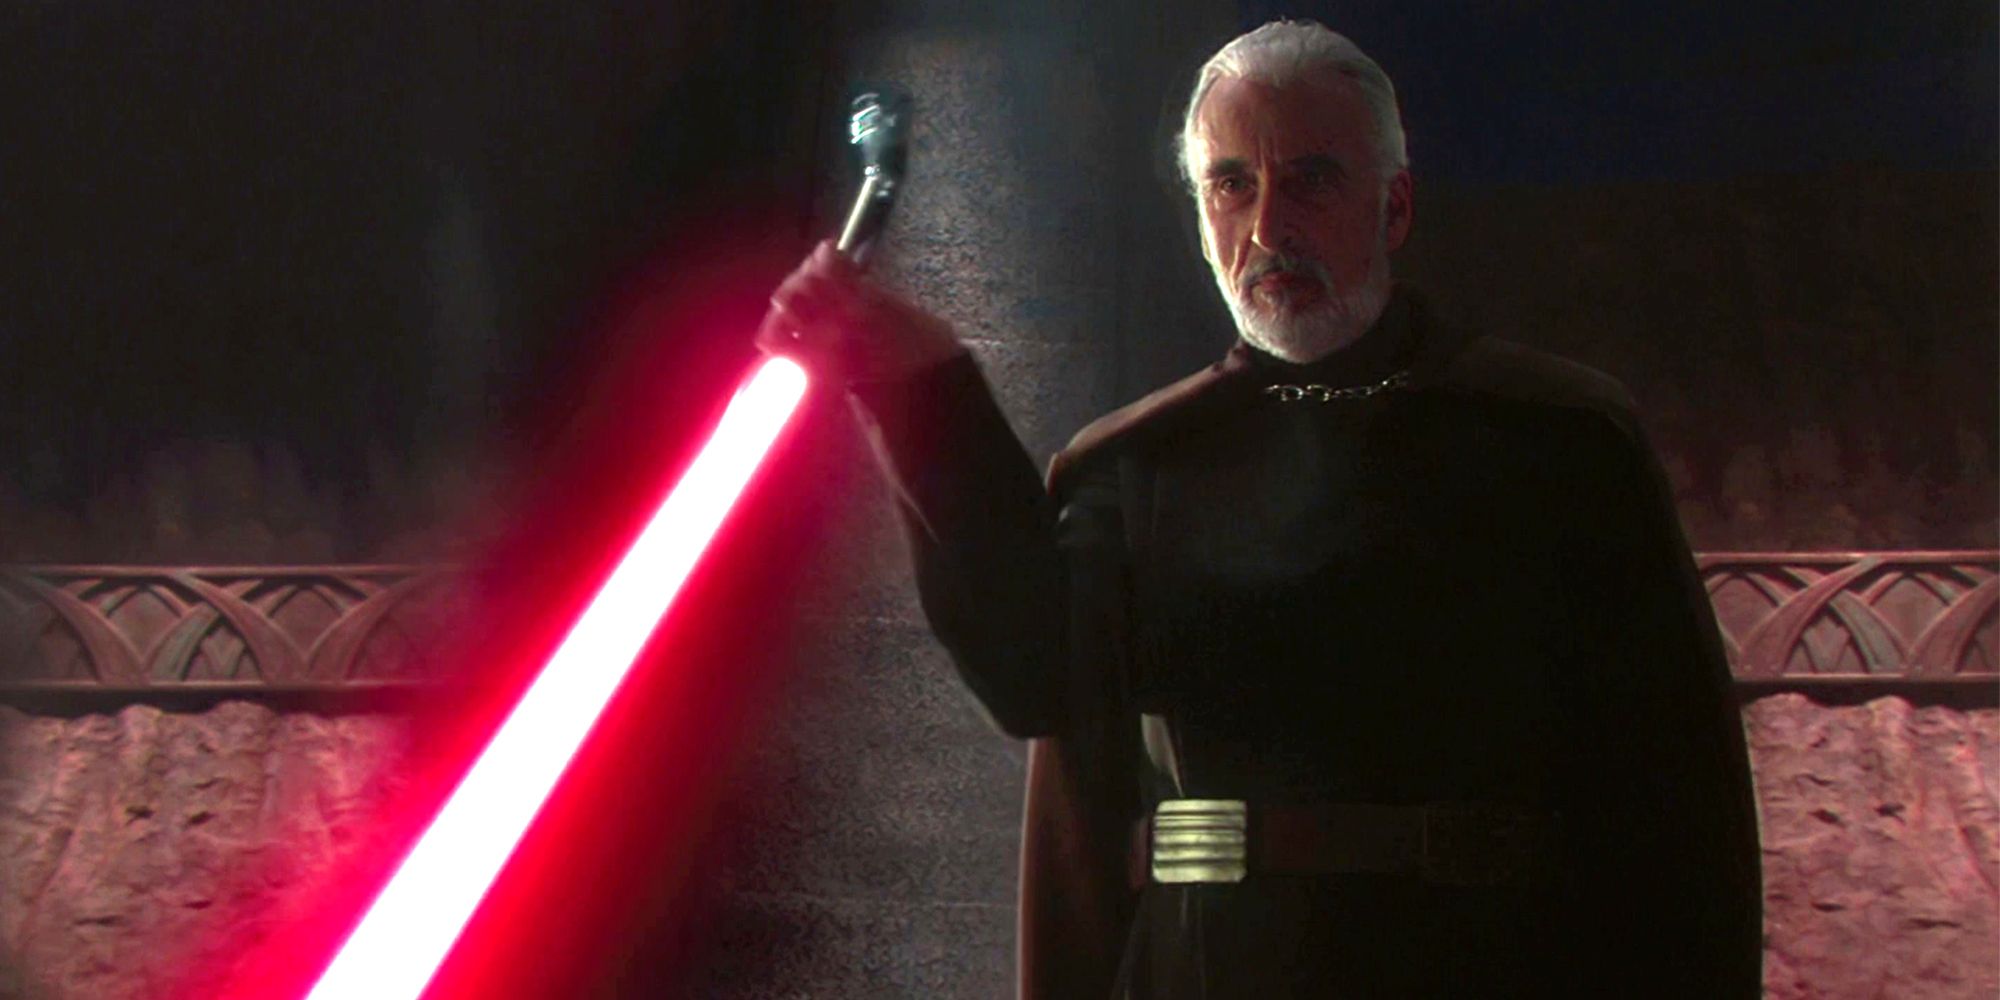 Count Dooku wielding lightsaber in Star Wars